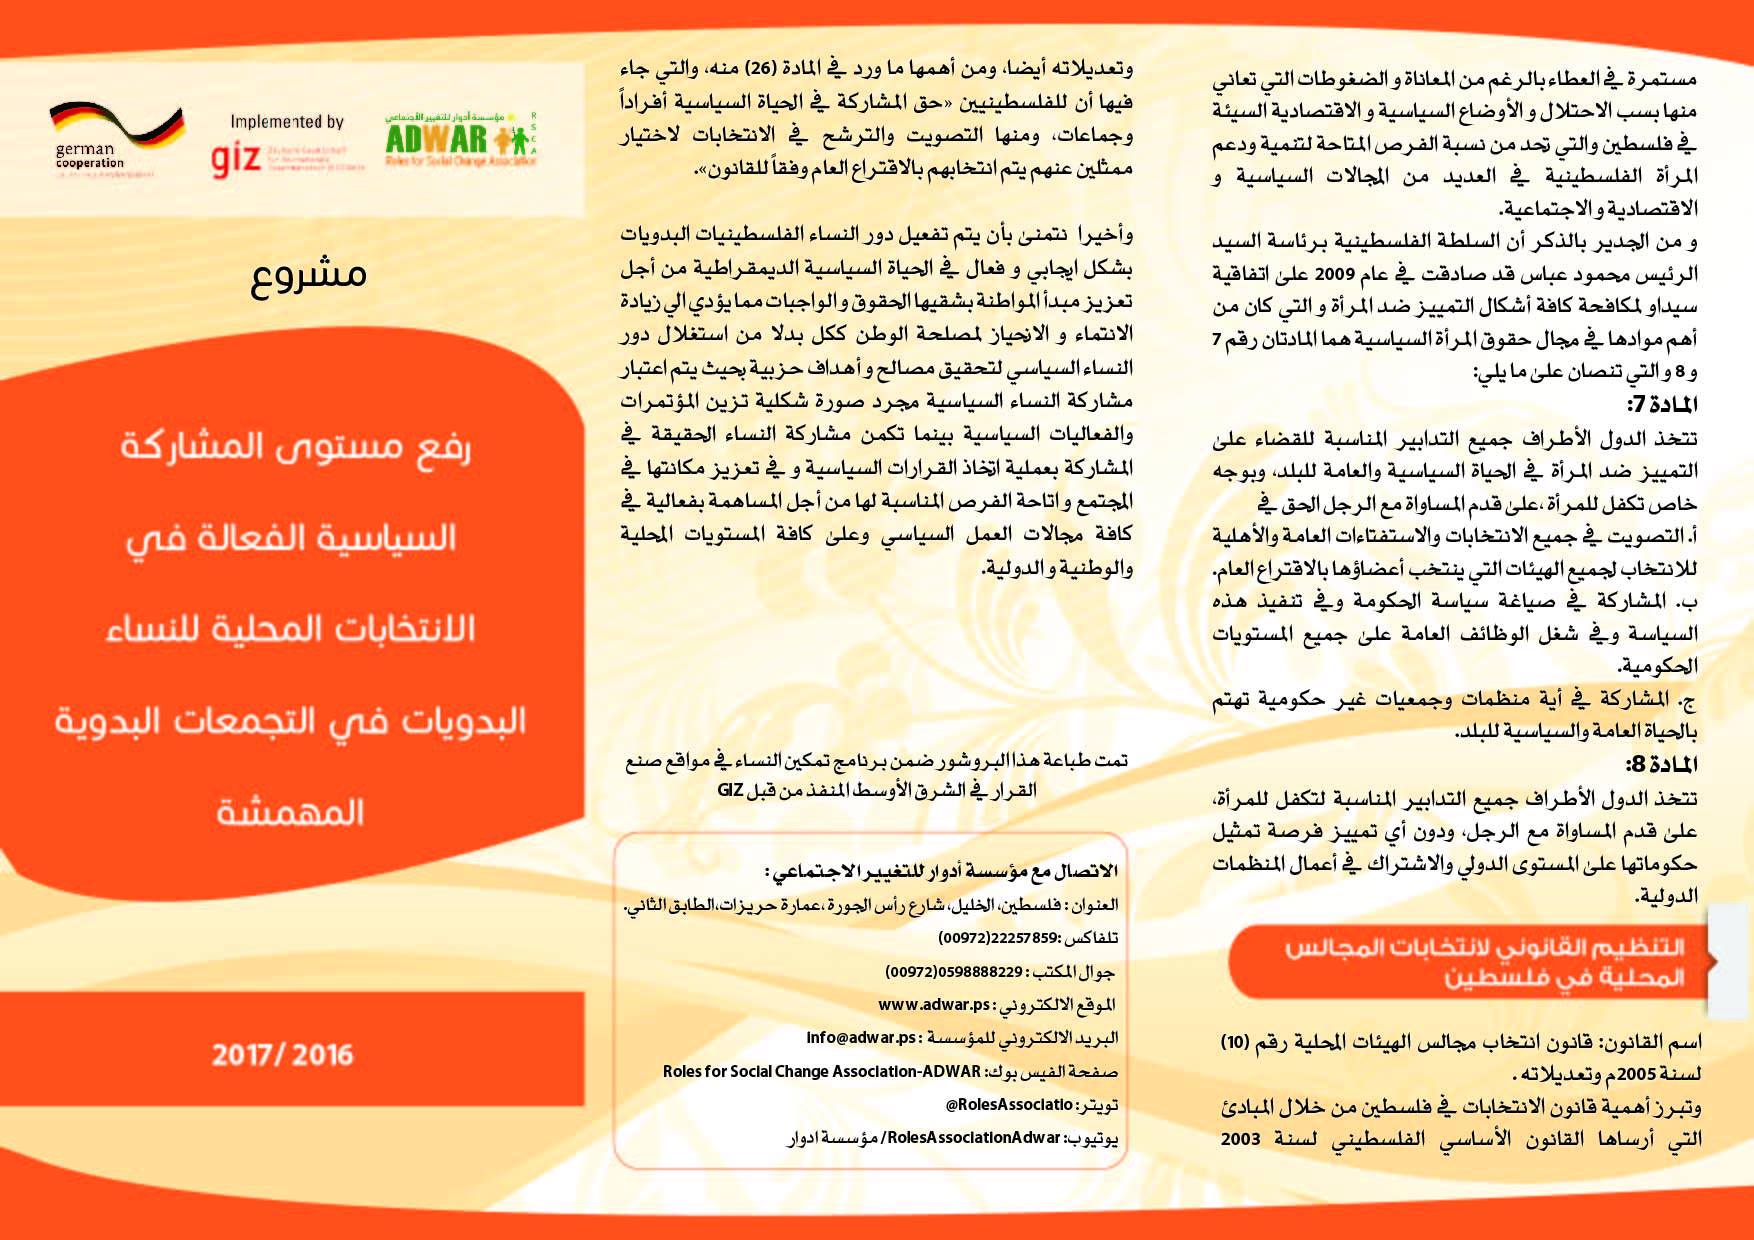  بروشور المشروع ( رفع مستوى المشاركة السياسية الفعالة في الانتخابات المحلية للنساء البدويات في التجمعات البدوية المهمشة)